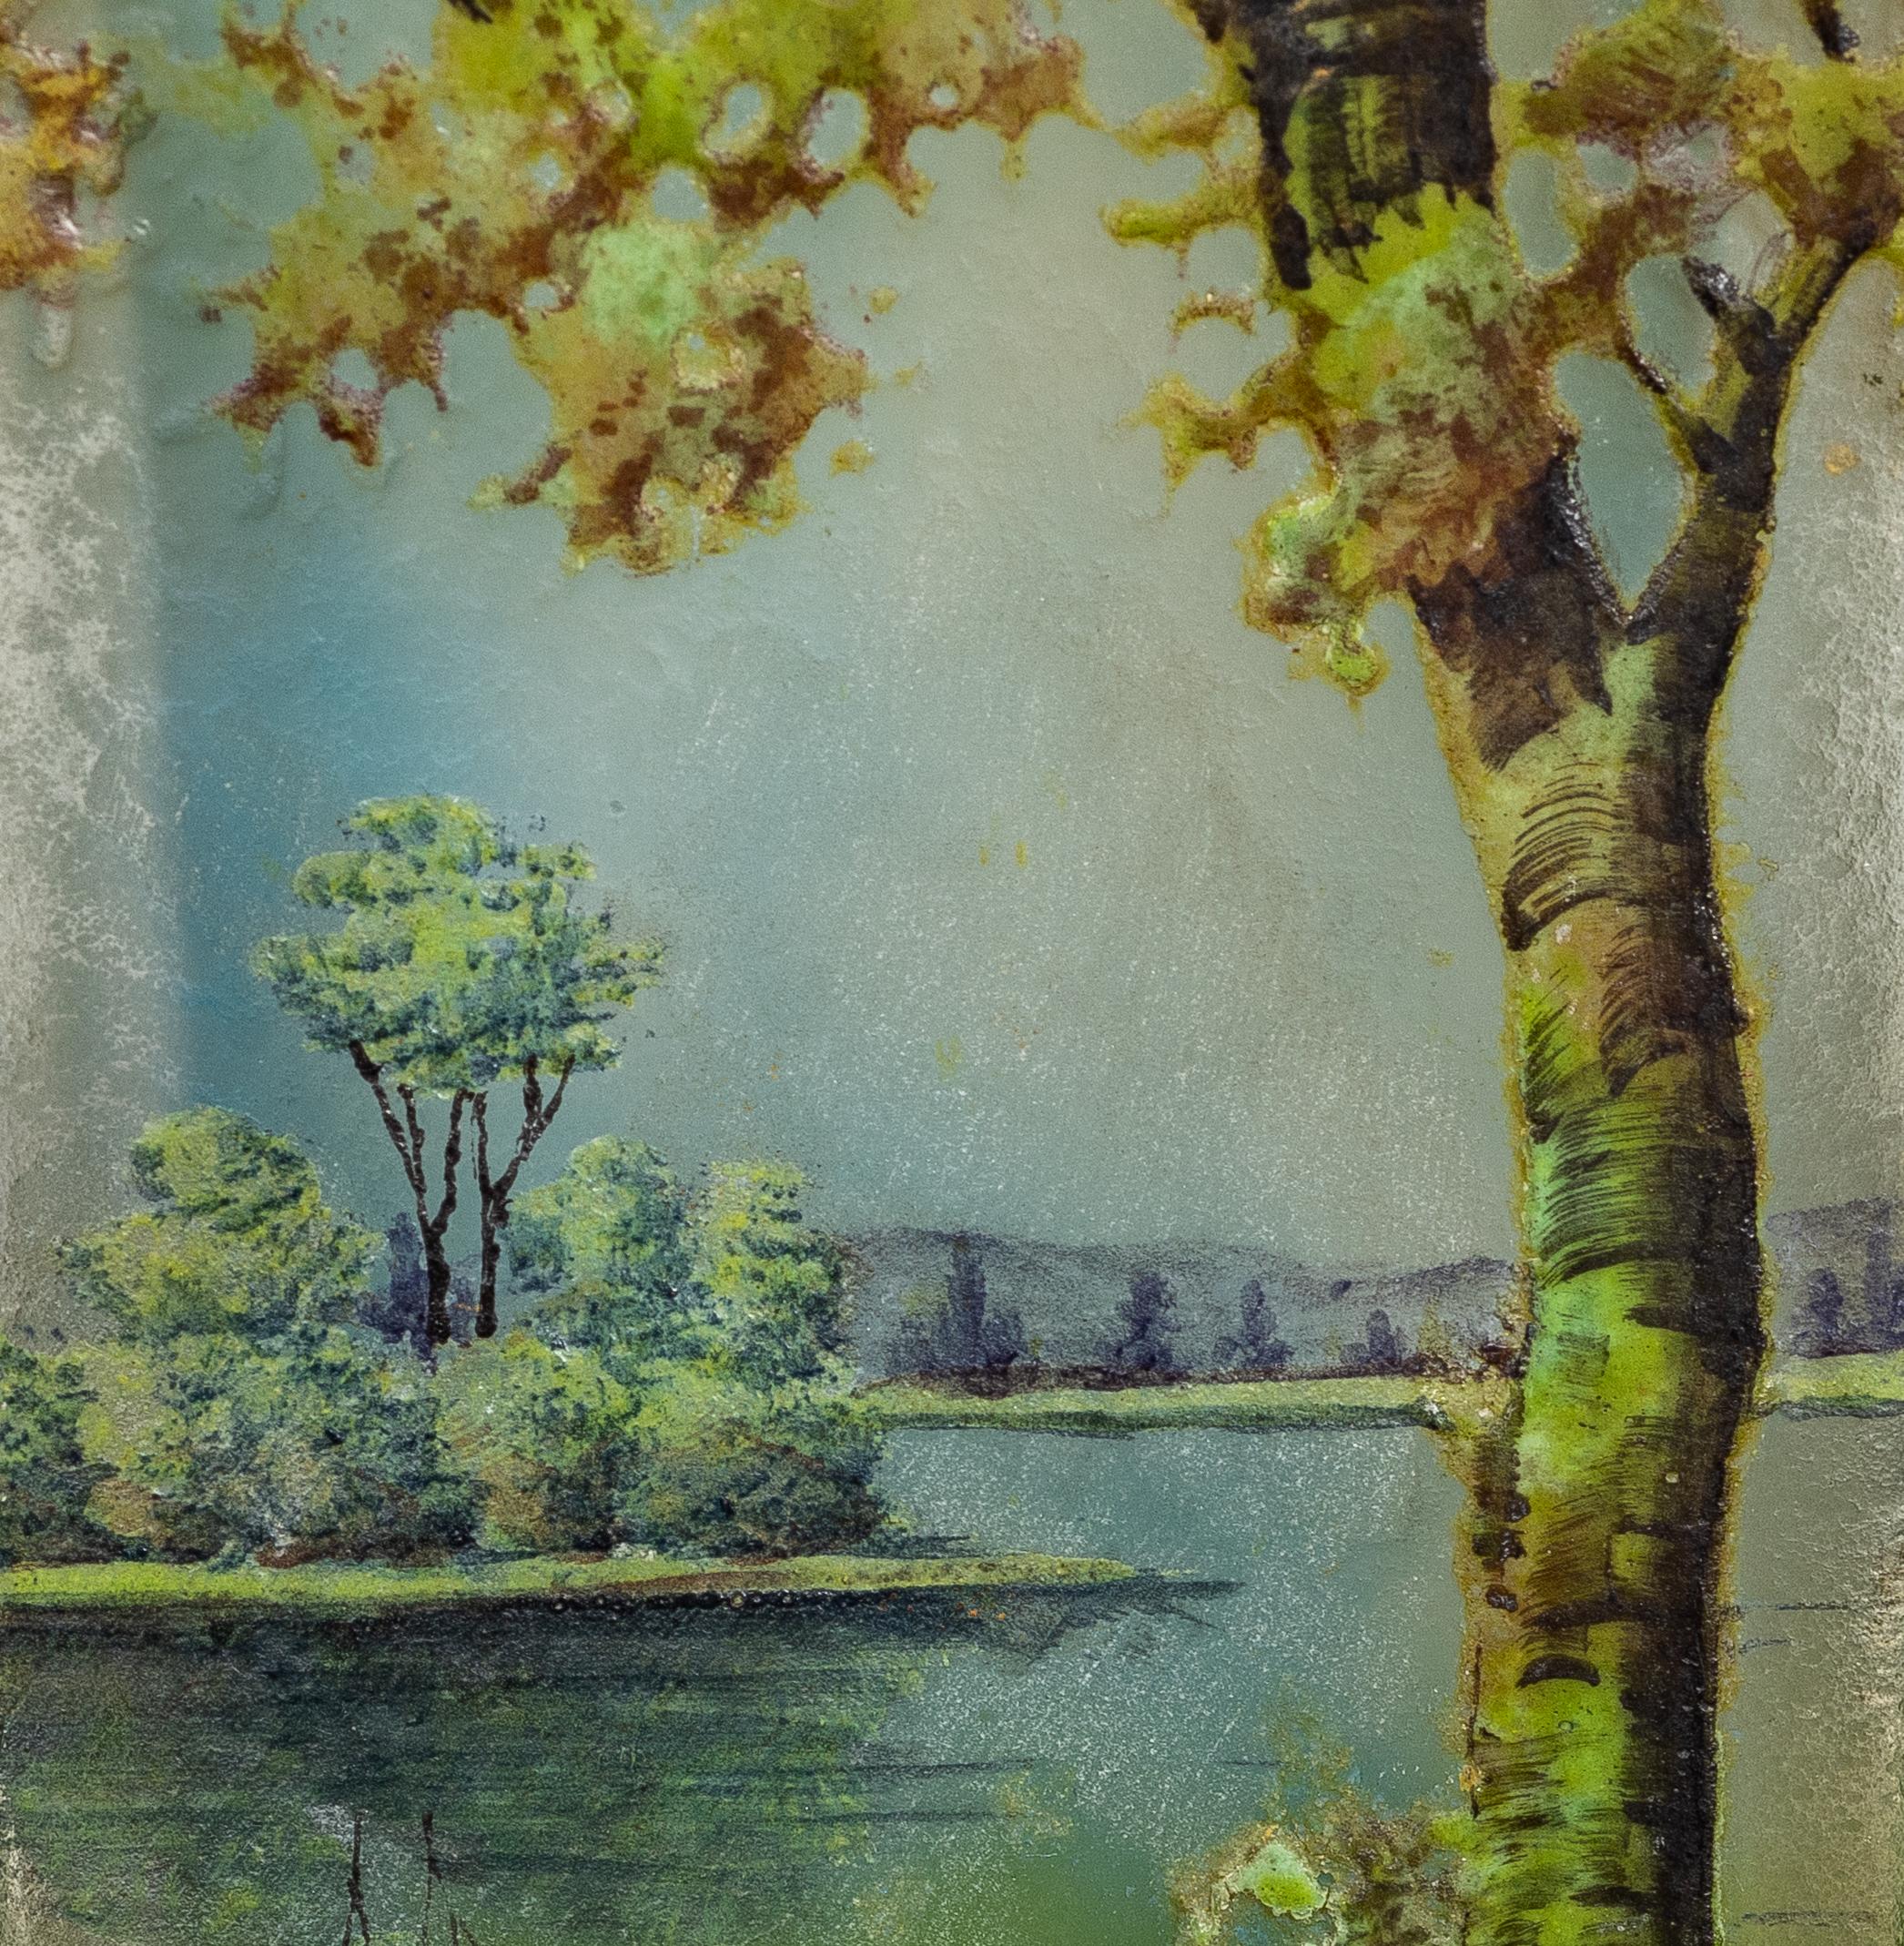 
Daum Nancy Glasvase mit Kamee und Emaille,
Frankreich, um 1910
Dekoriert mit Bäumen und einer fernen Landschaft auf einem hellen opalisierenden Grund
Signiert Daum Nancy mit Lorraine-Kreuz
Abmessungen:
Breite 2 Zoll (5,2 cm)
Höhe 11,93 cm (4,7